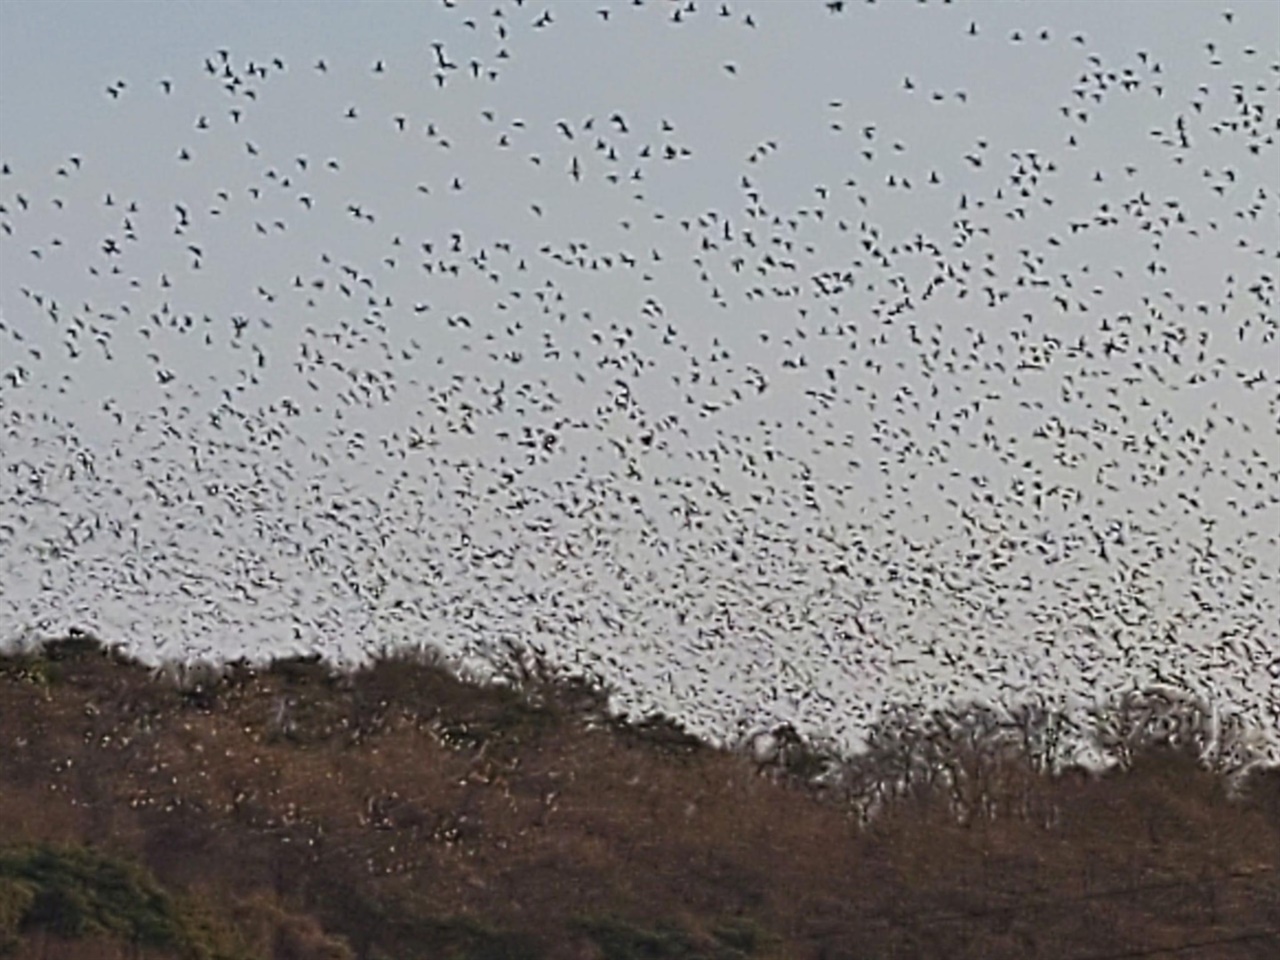 홍성의 한 방죽에 겨울 철새들이 몰려들면서 장관을 이루고 있다. 홍성읍 고암리에 있는 역재방죽공원에는 겨울 철새들이 자리를 잡으면서, 이들의 보금자리 역할을 톡톡히 하고 있다.